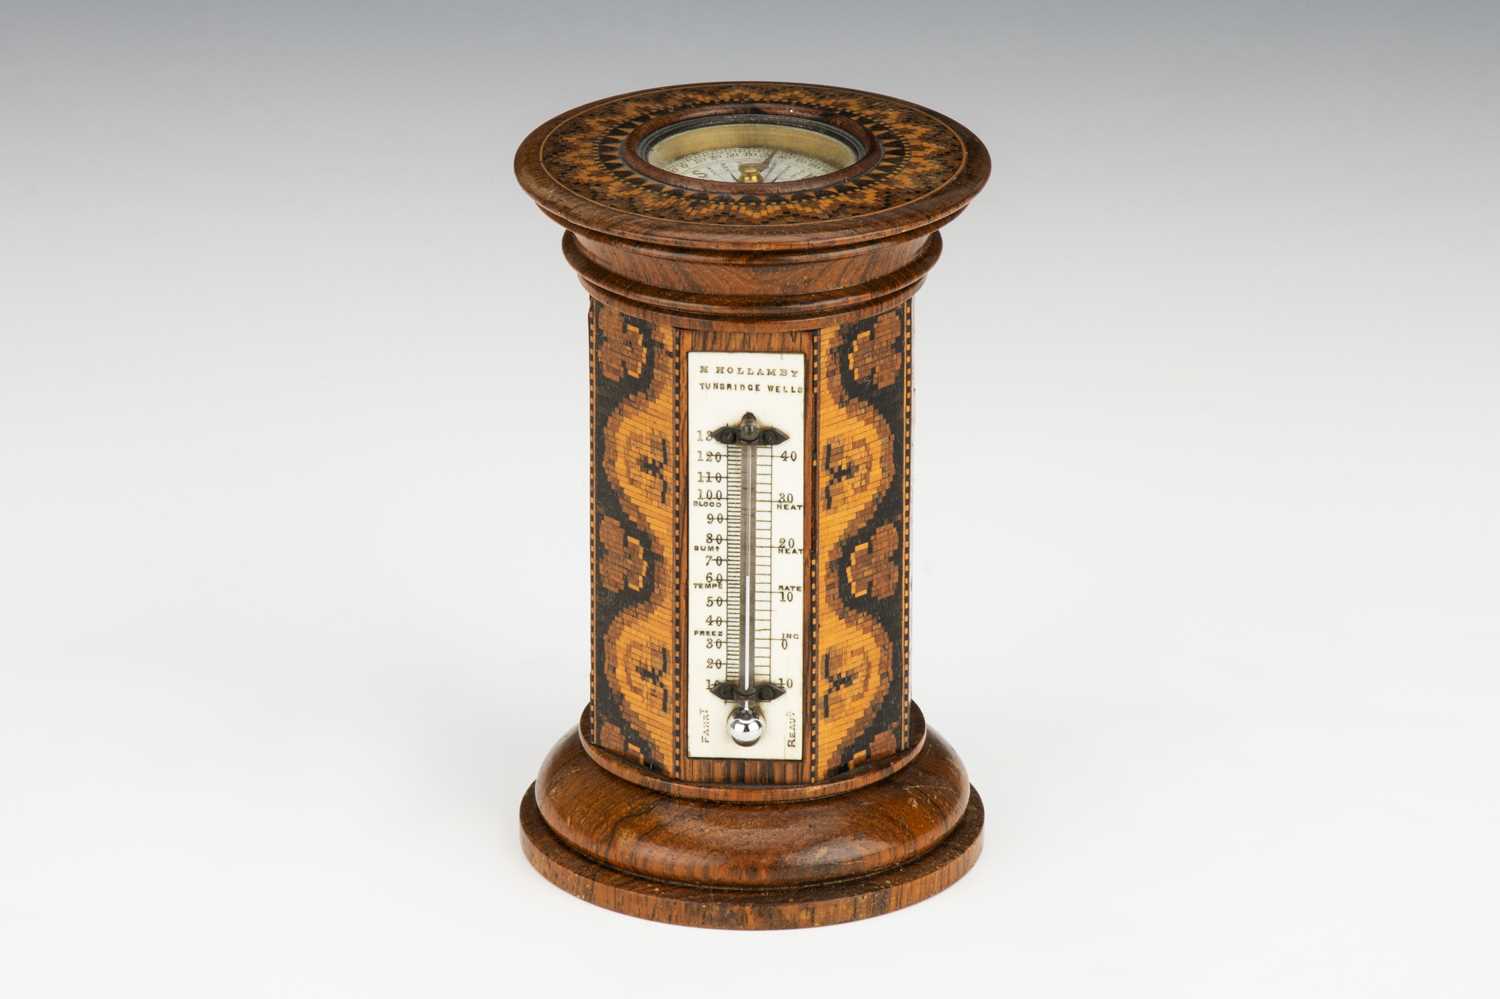 Lot 169 - Tunbridge Ware Combination Thermometer & Compass